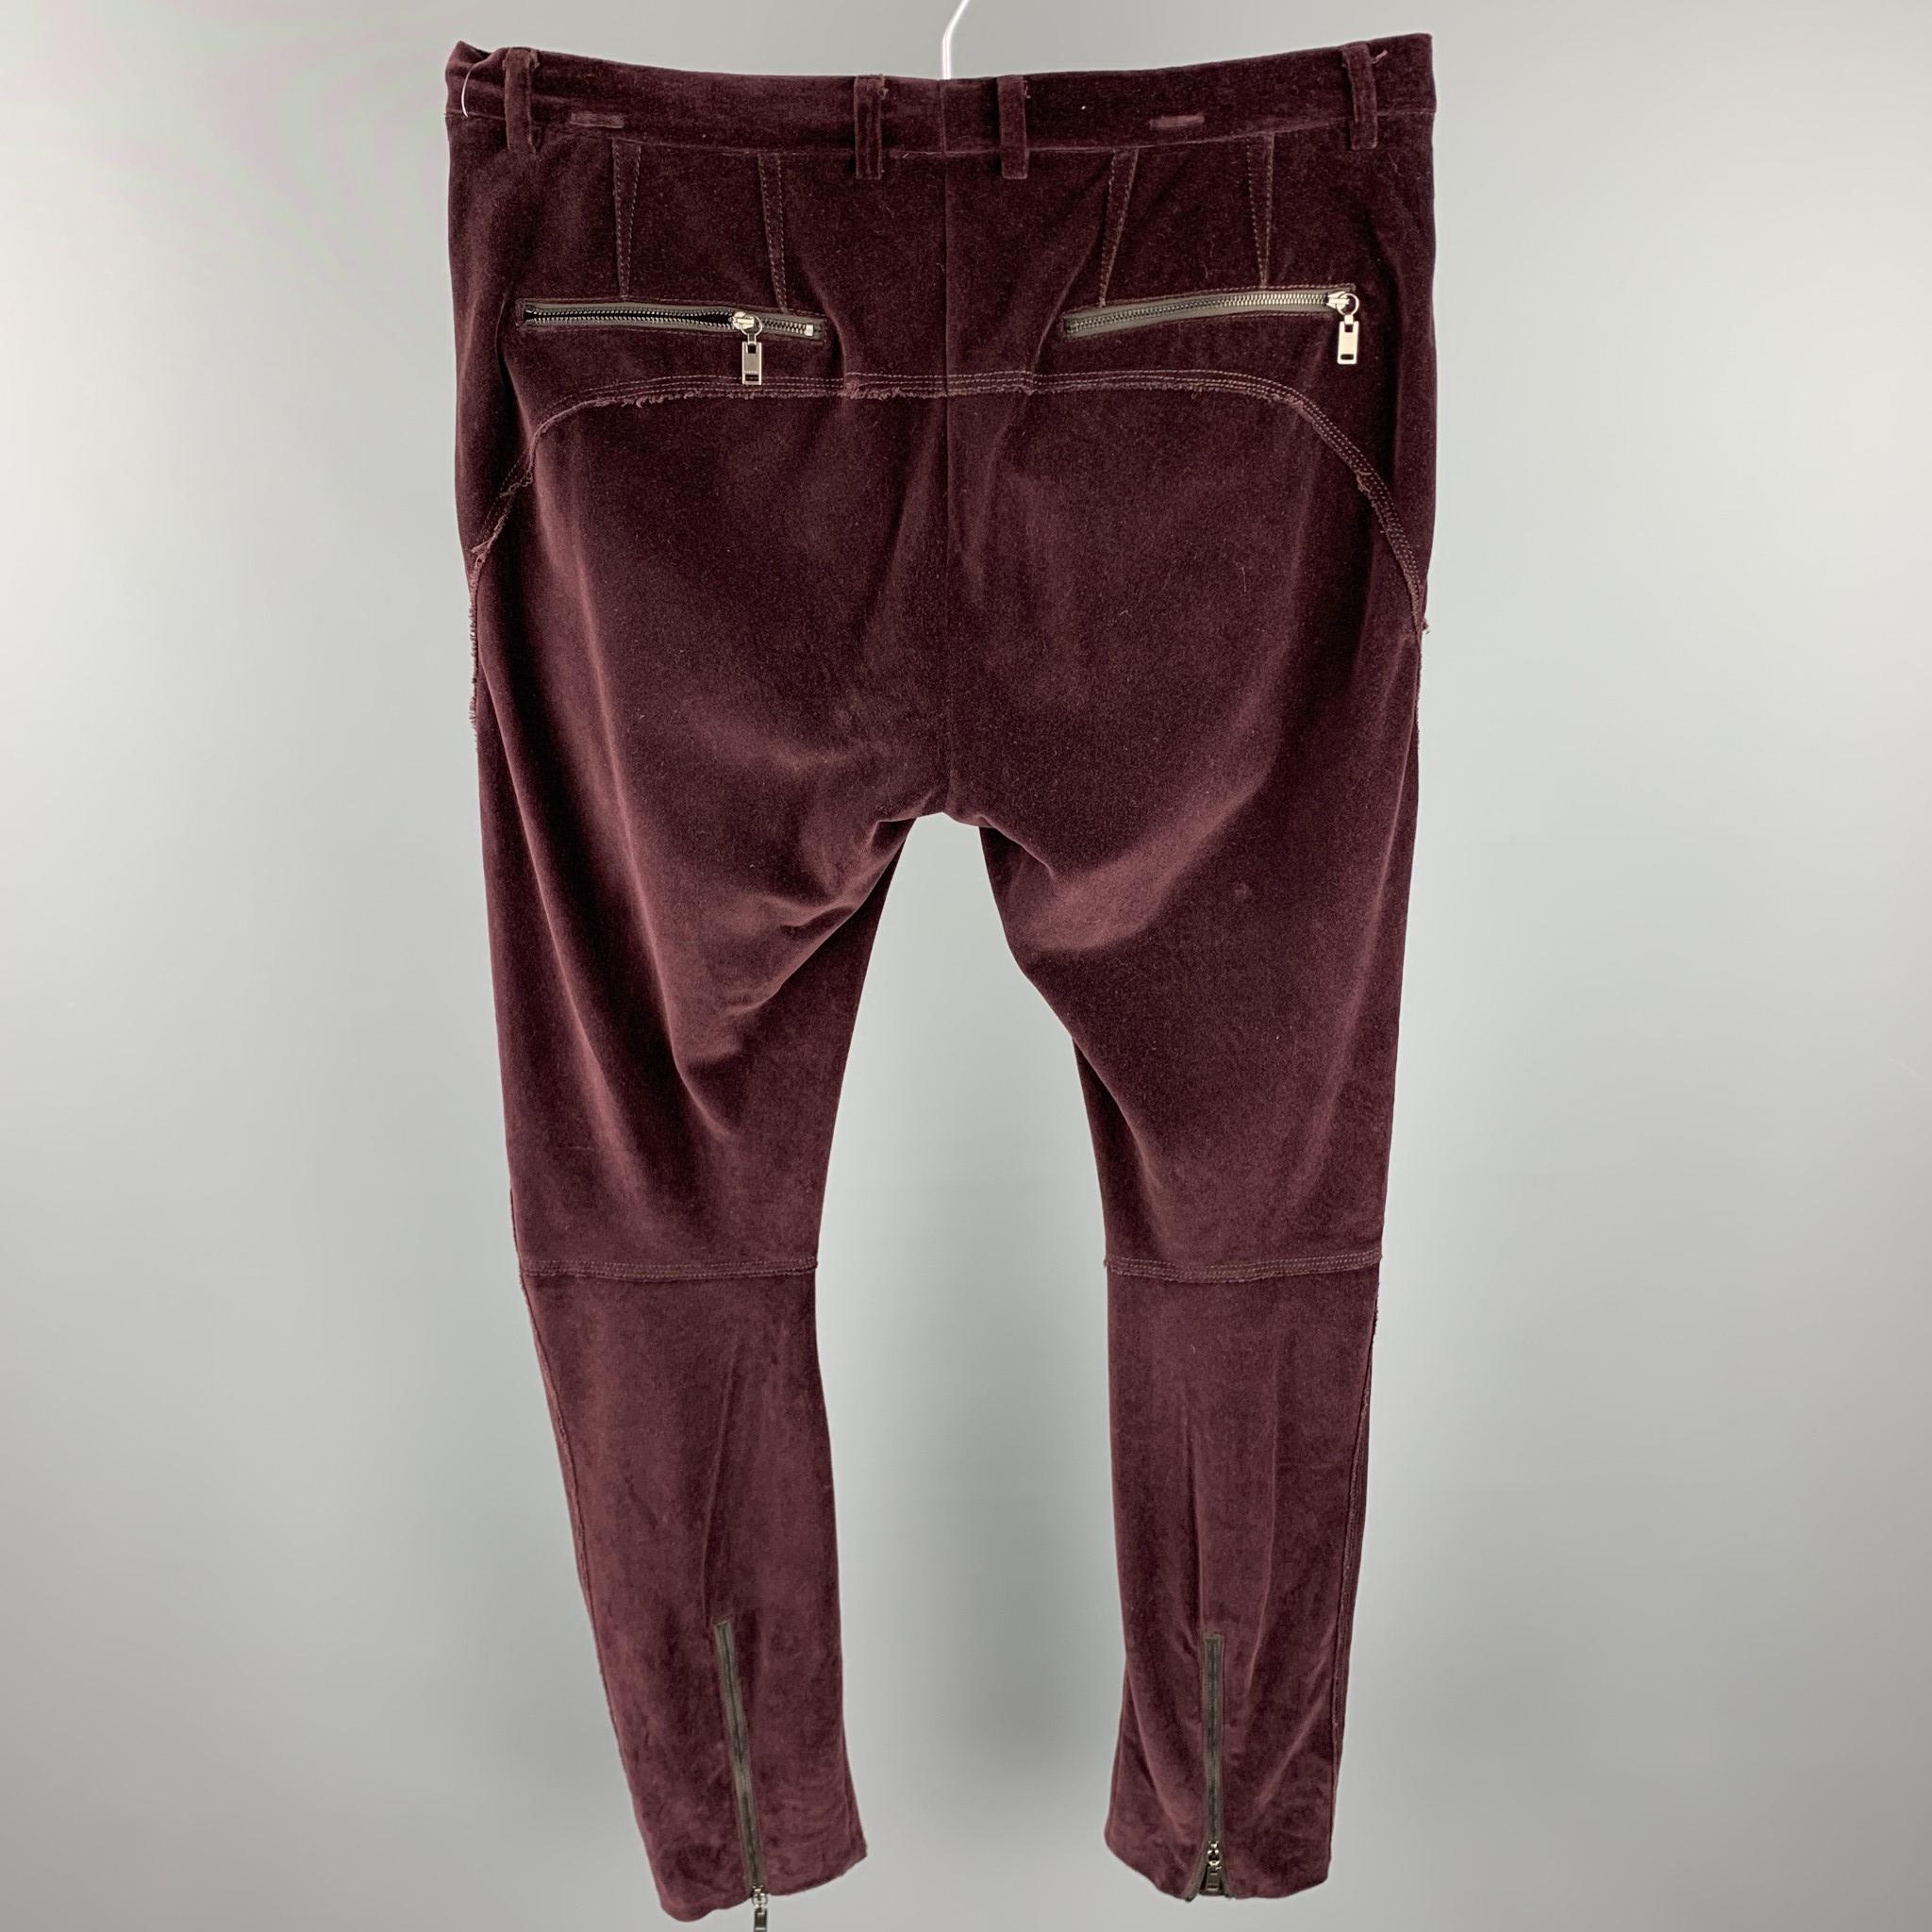 Black LANVIN Size 32 Burgundy Solid Cotton Velvet Zip Up Casual Pants